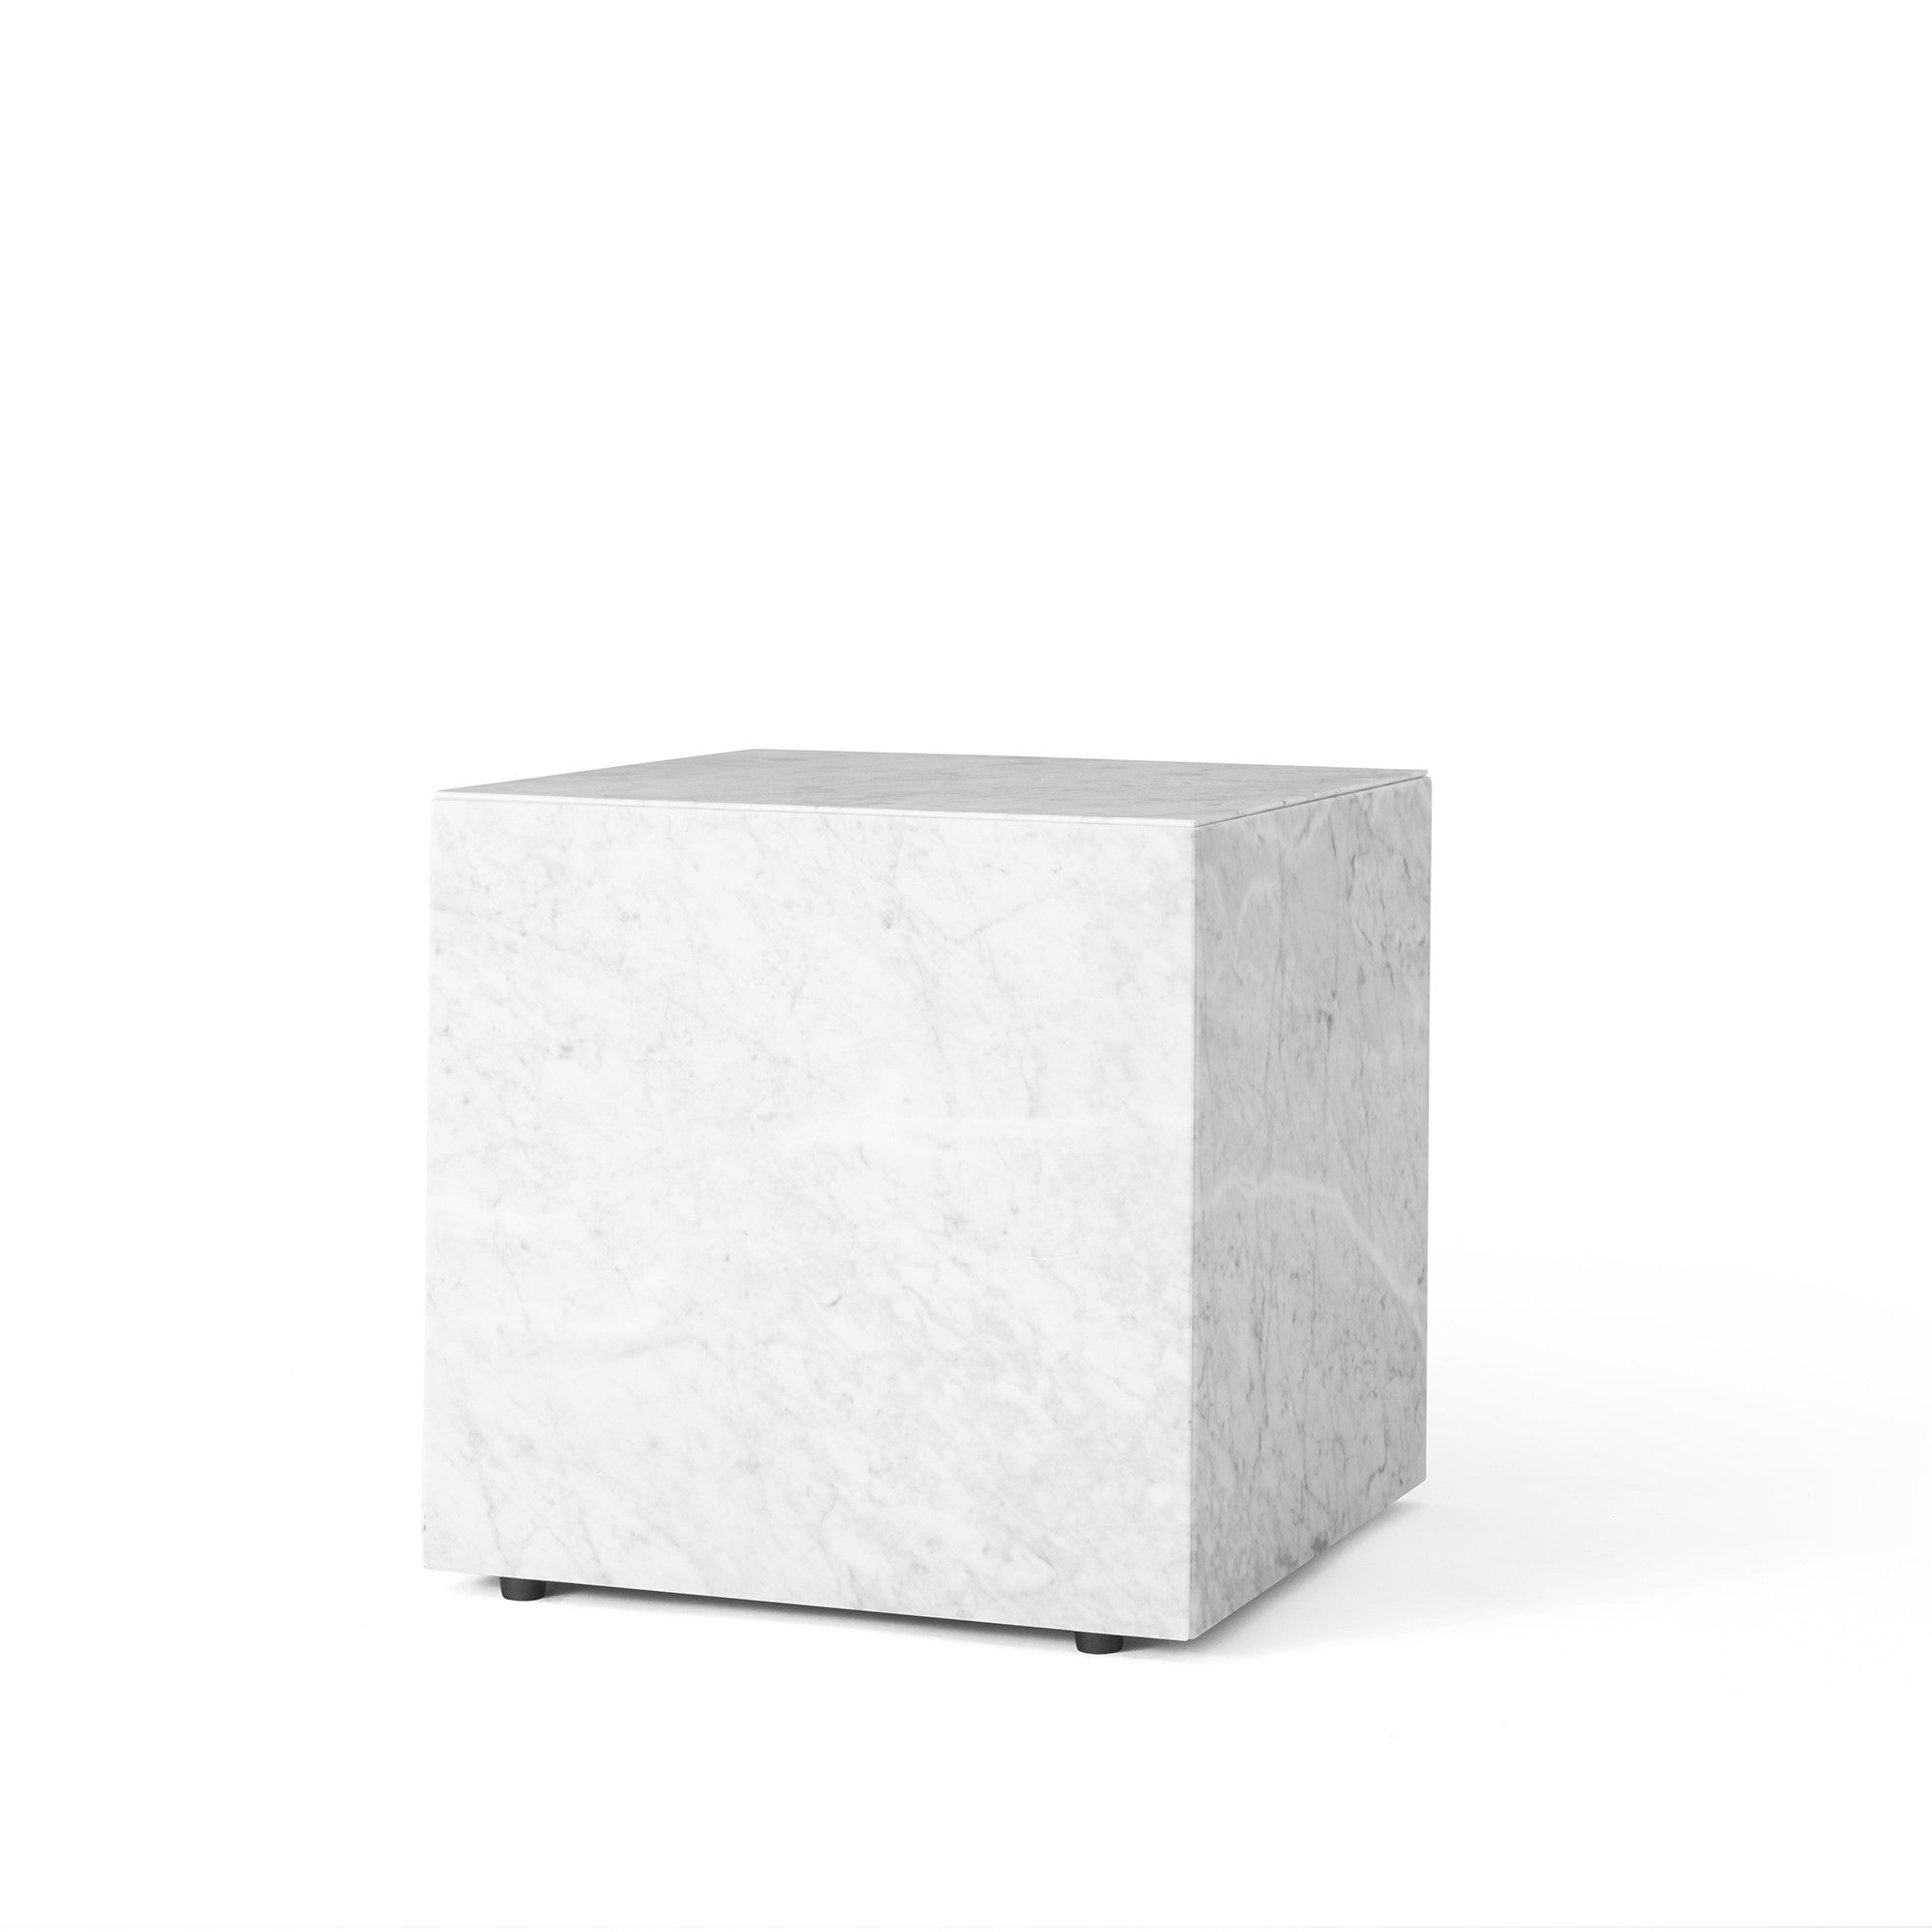 Plinth măsuță cub